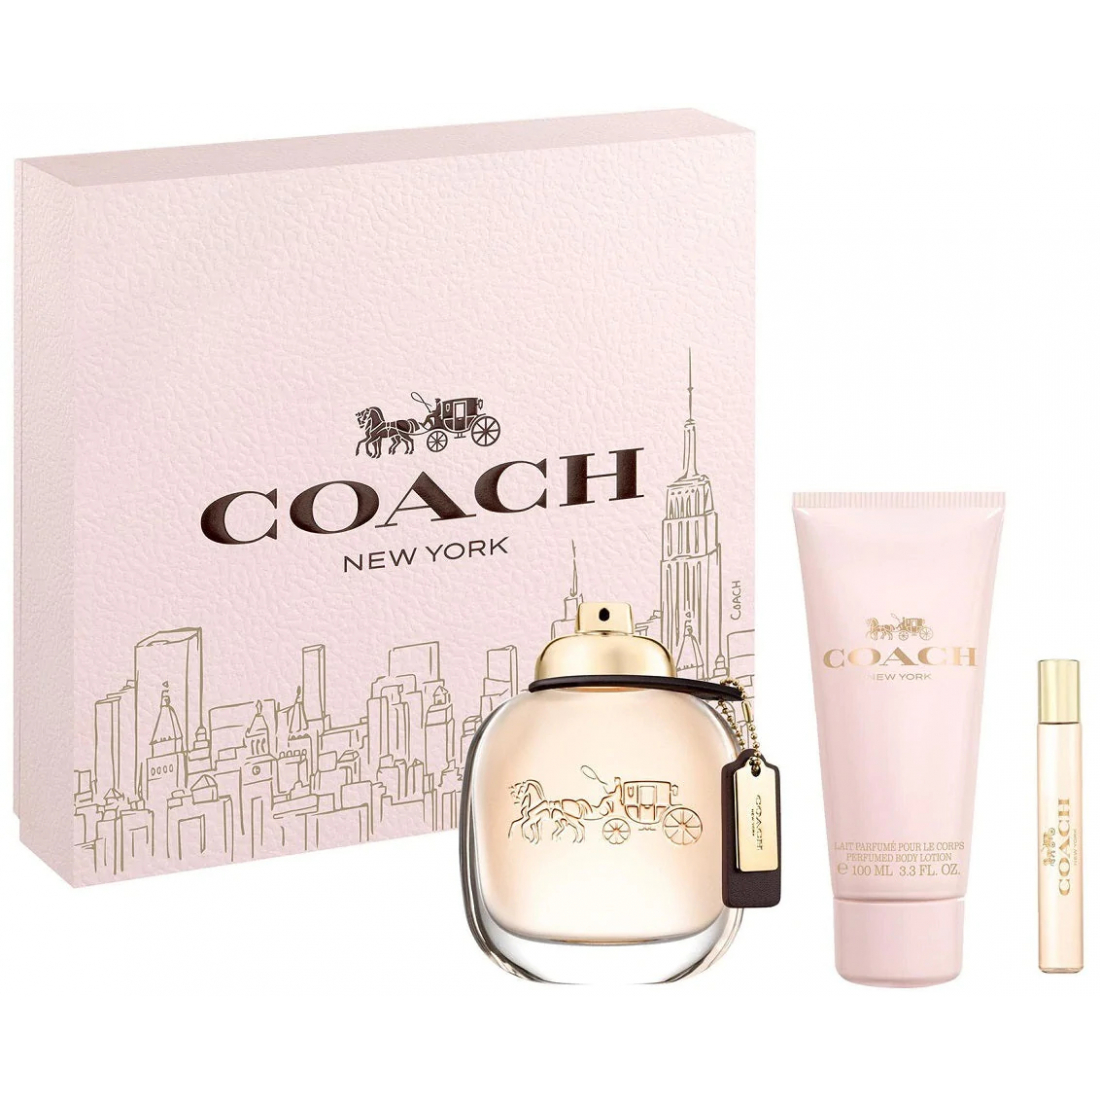 'Coach New York' Coffret de parfum - 3 Pièces